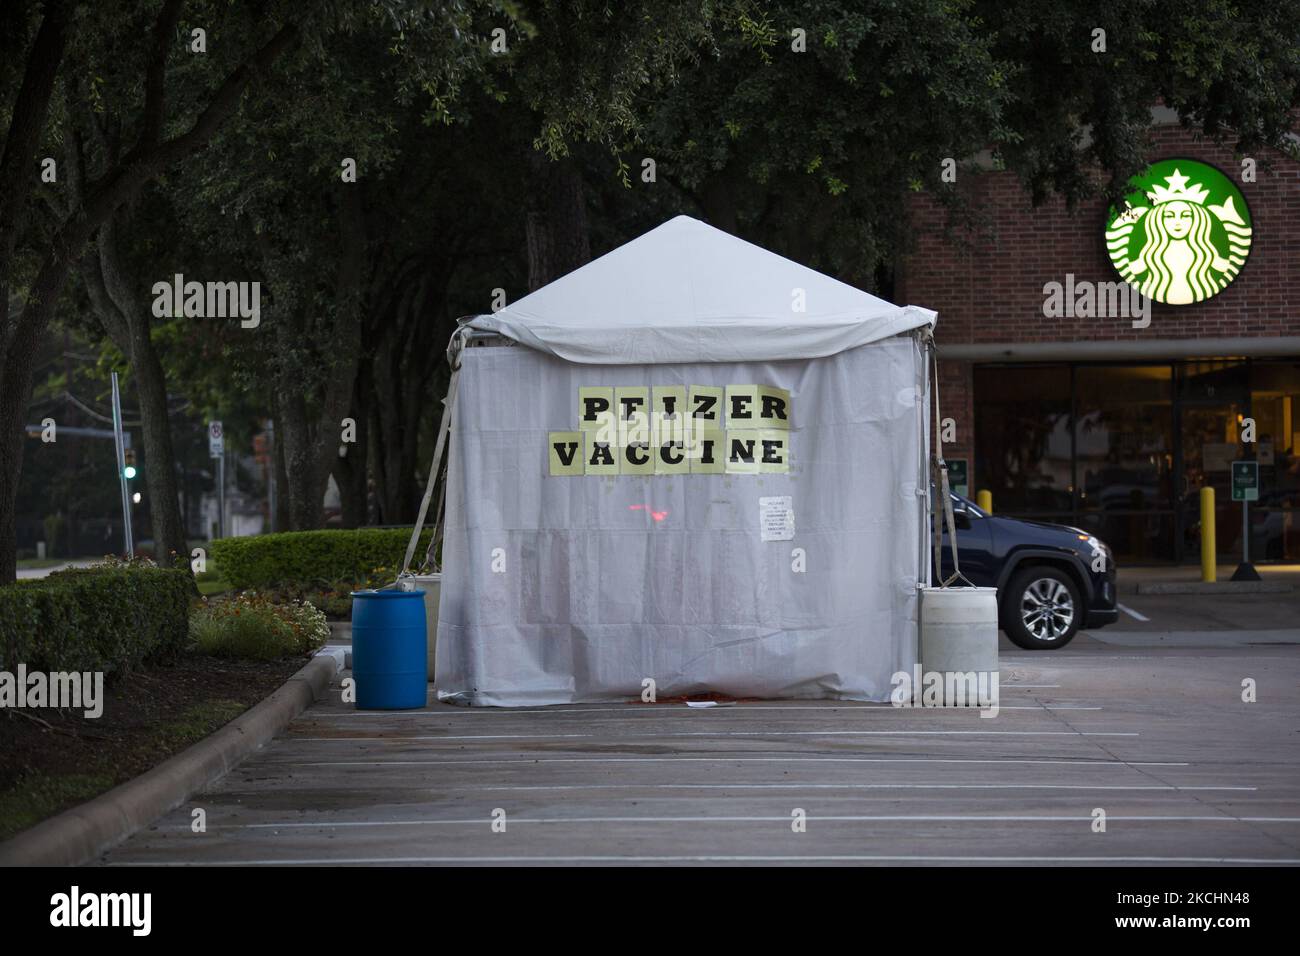 Une tente de vaccination Pfizer à l'extérieur de Entrust immédiat Care à Houston, Texas, tôt le matin de 25 juillet 2021. (Photo de Reginald Mathalone/NurPhoto) Banque D'Images